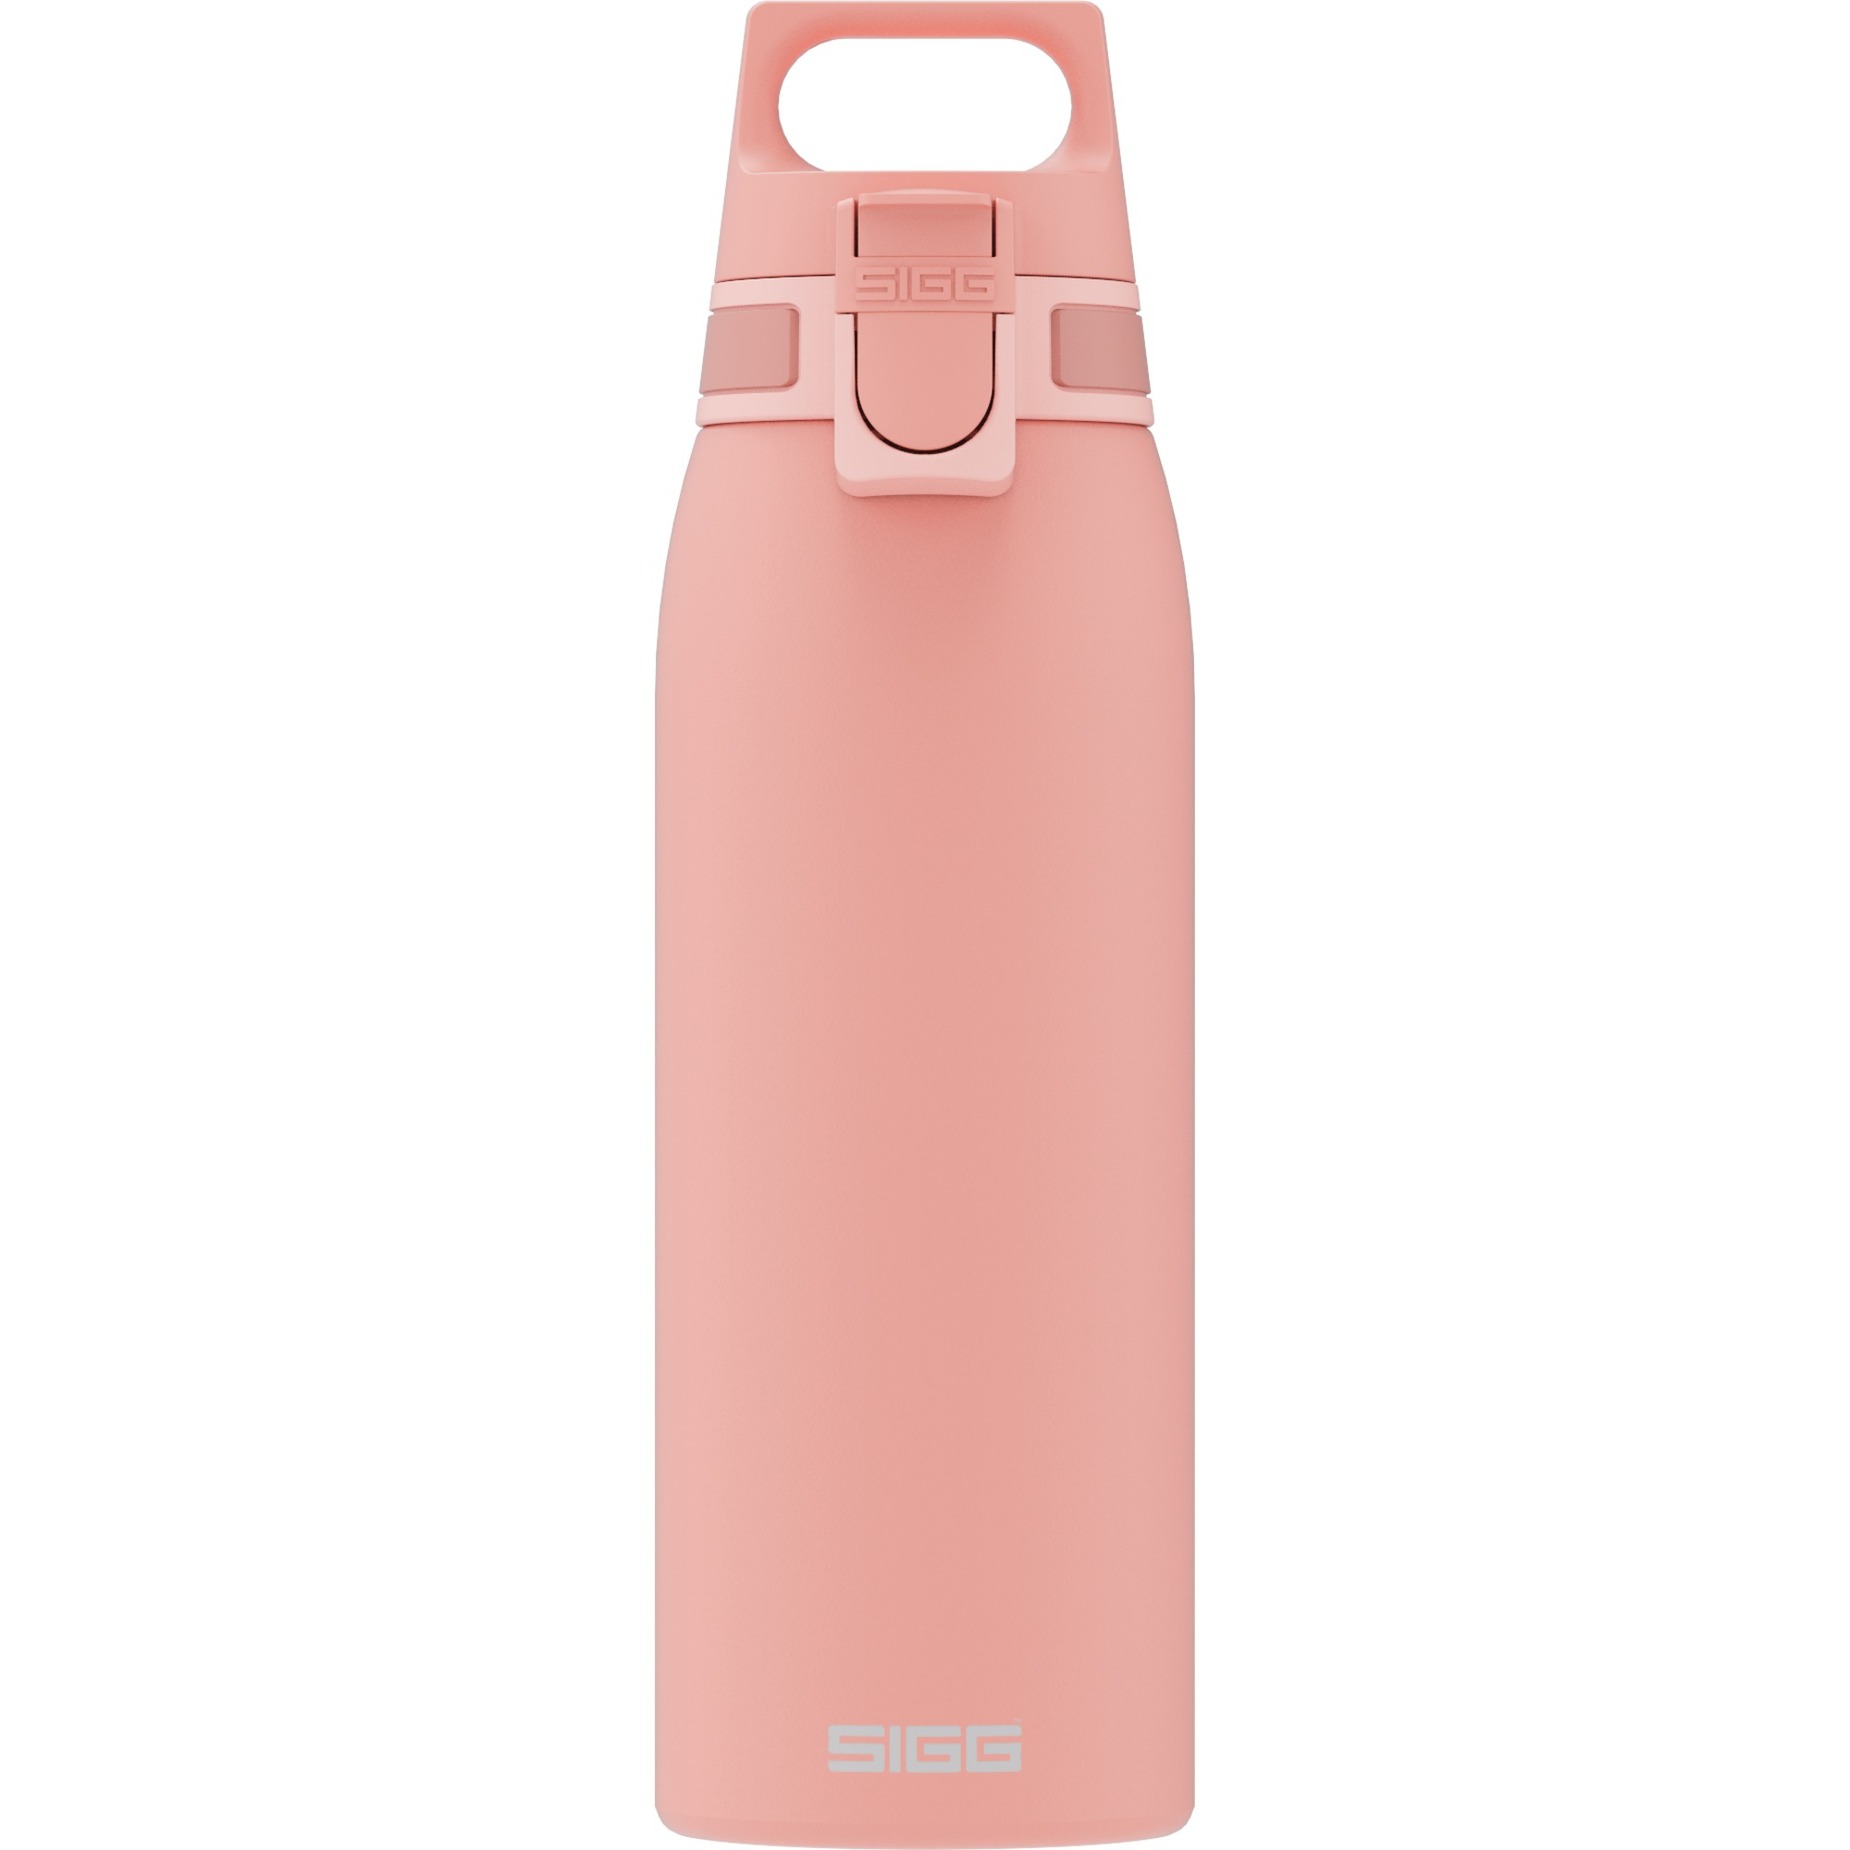 Image of Alternate - Trinkflasche Shield One Shy Pink 1L online einkaufen bei Alternate